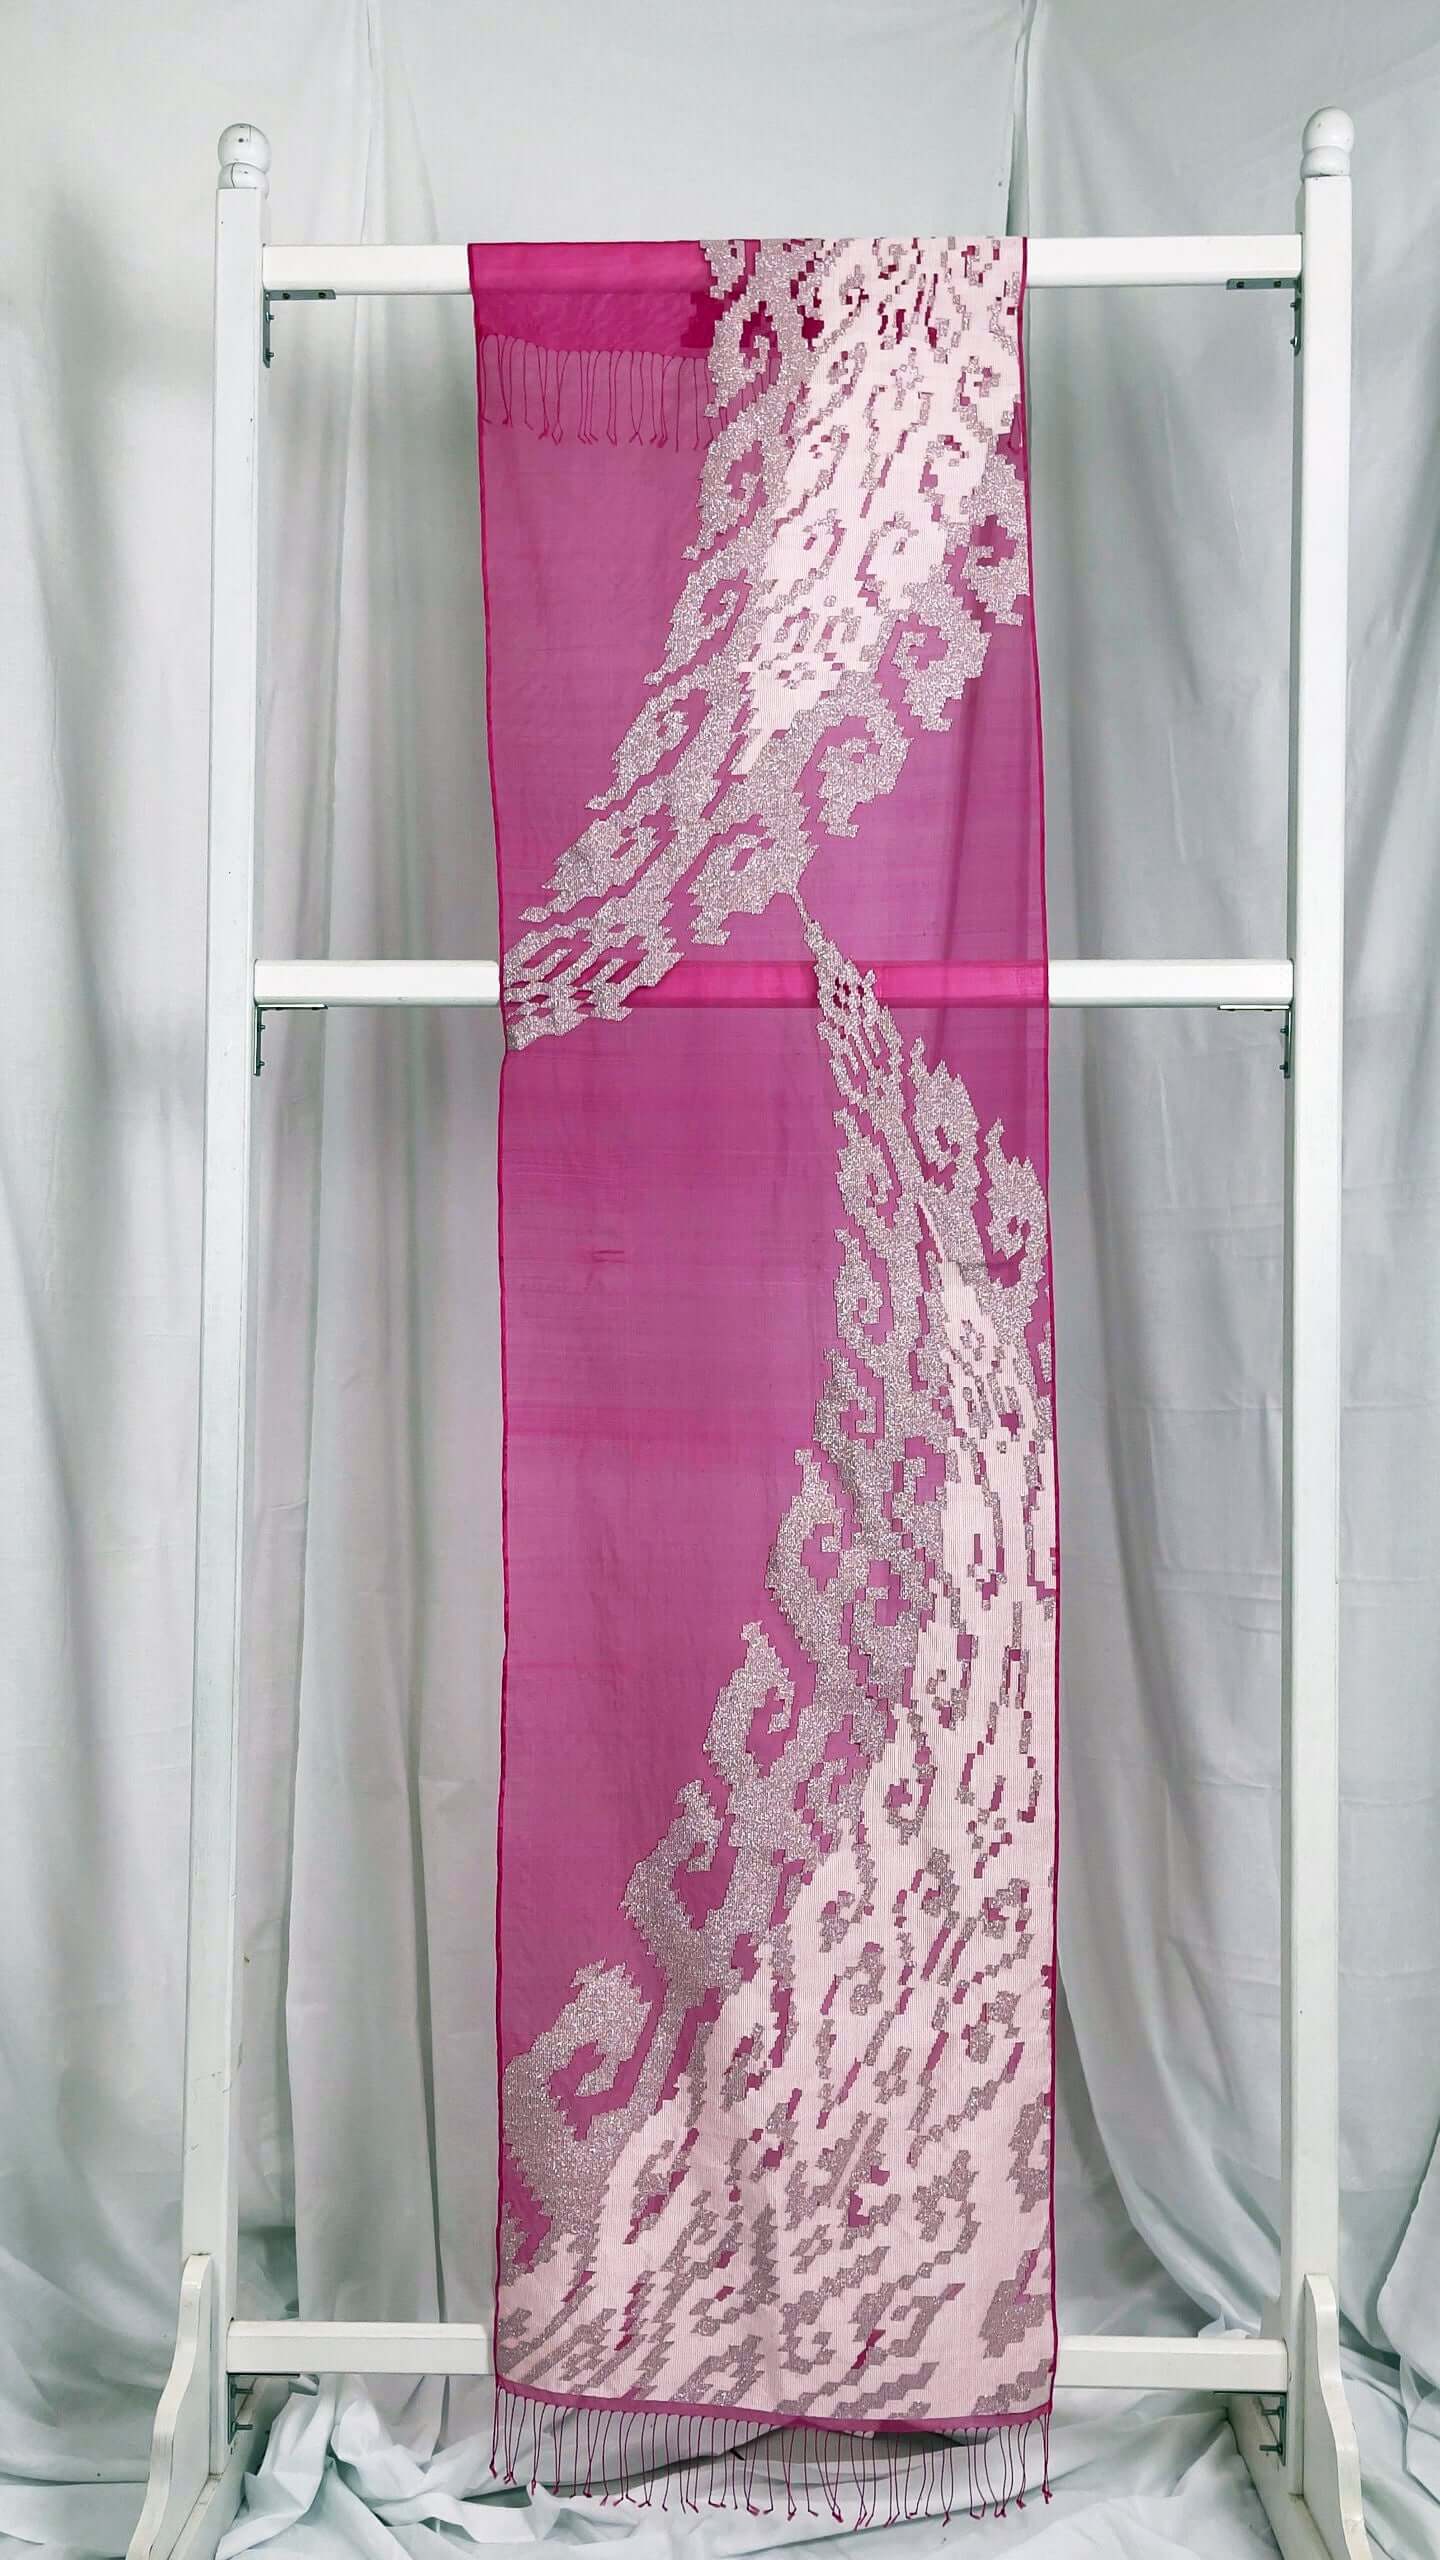 Rebungan Pink handwoven silk songket shawl textile